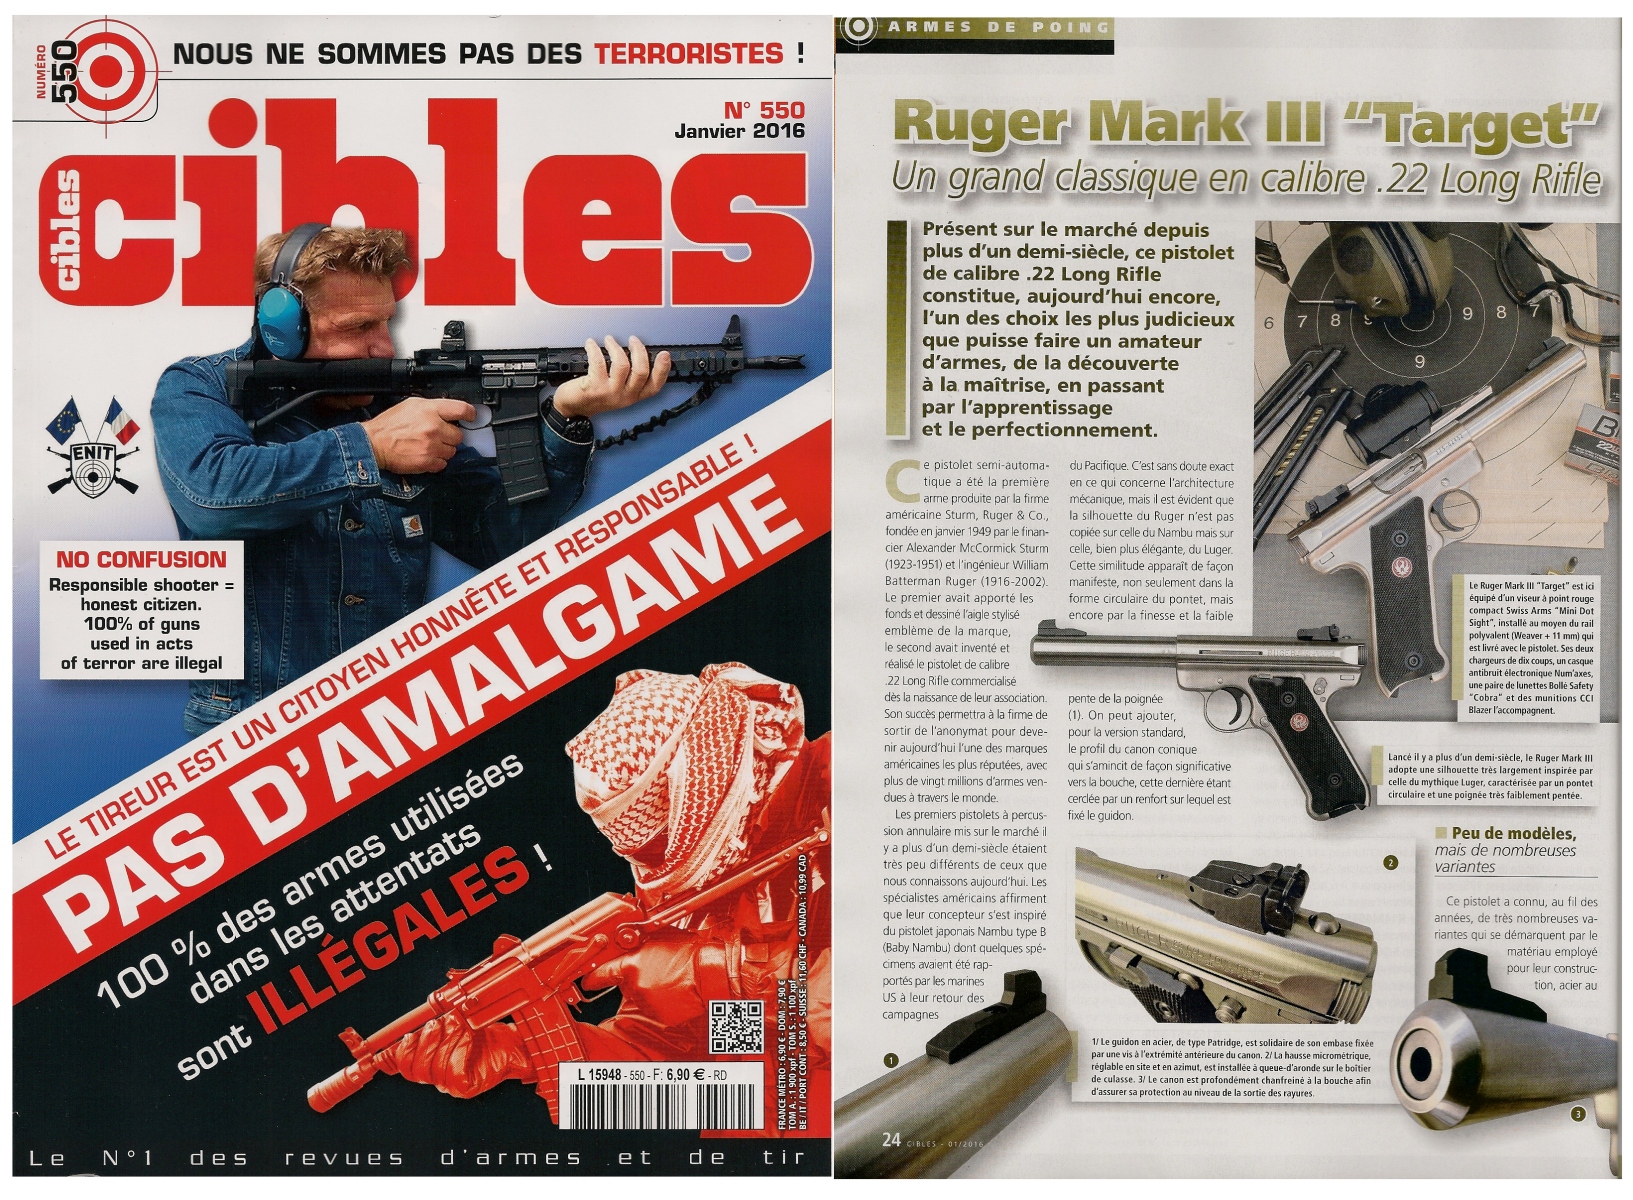 Le banc d'essai du pistolet Ruger Mark III « Target » a été publié sur 8 pages dans le magazine Cibles n°550 (janvier 2016).